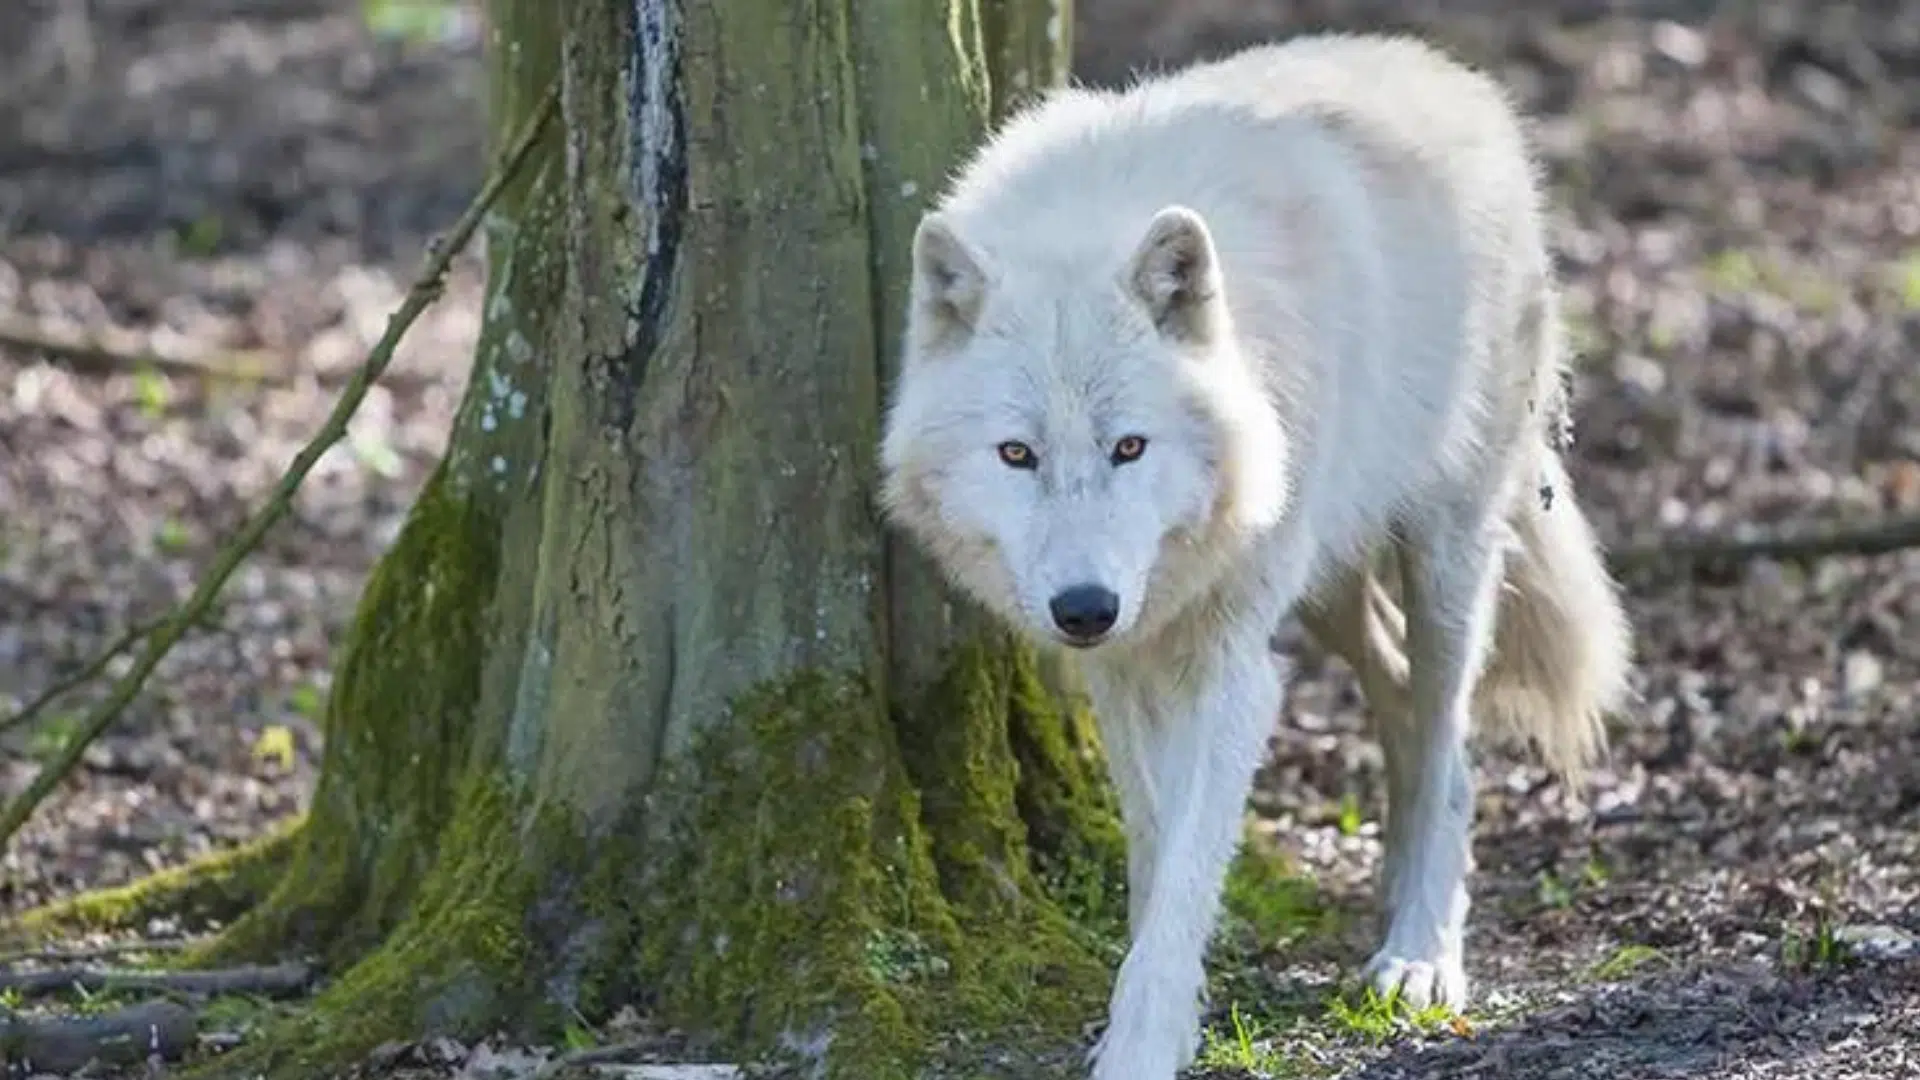 Zoo de Thoiry : une femme attaquée par des loups évacuée en urgence absolue